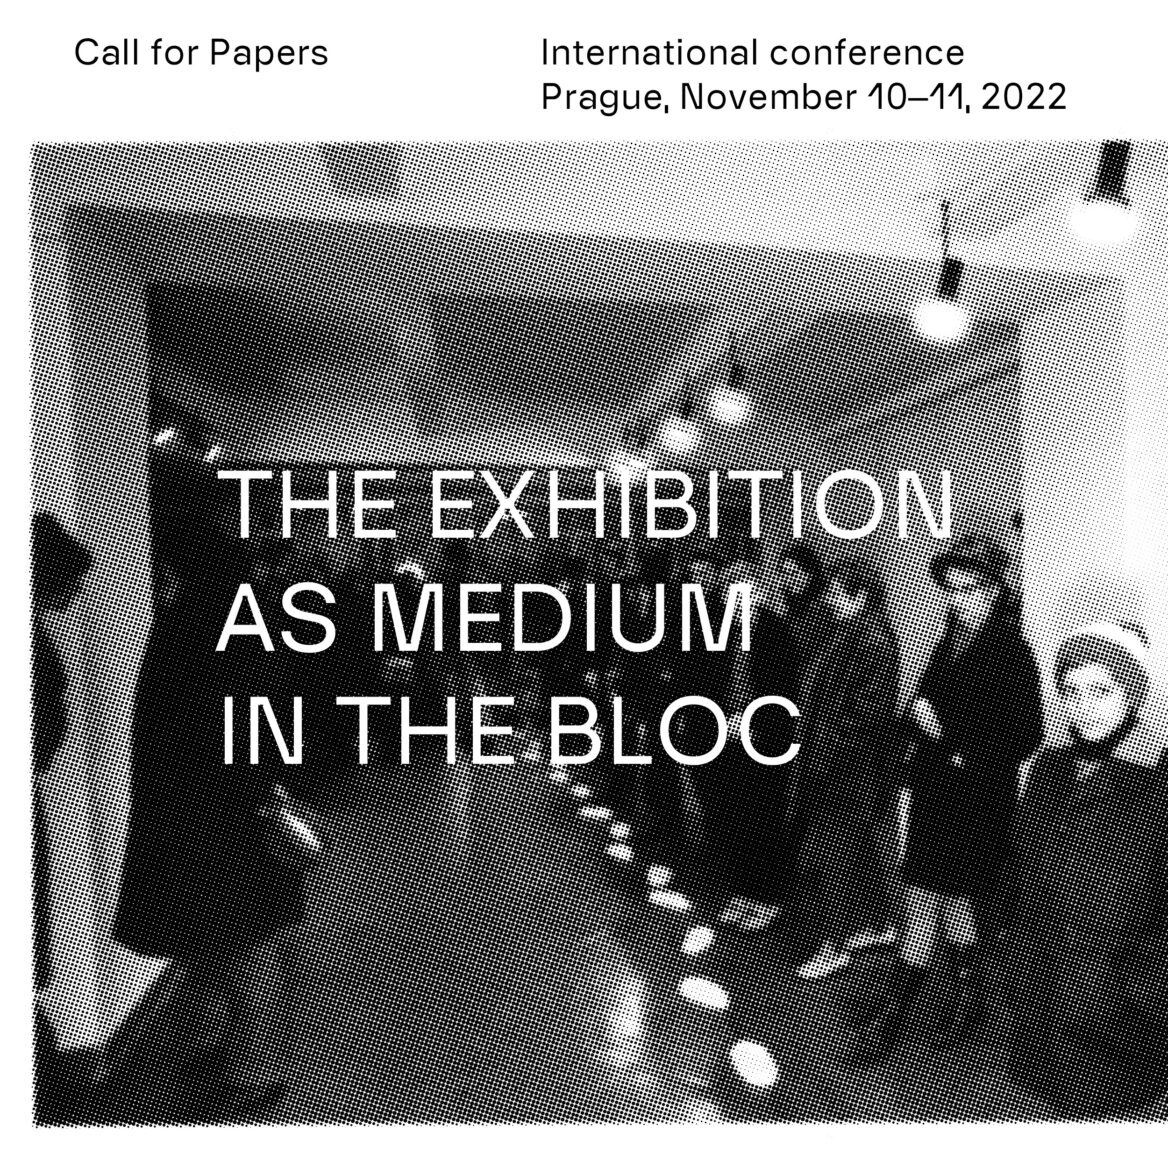 Připravujeme mezinárodní konferenci The exhibition as medium in the bloc